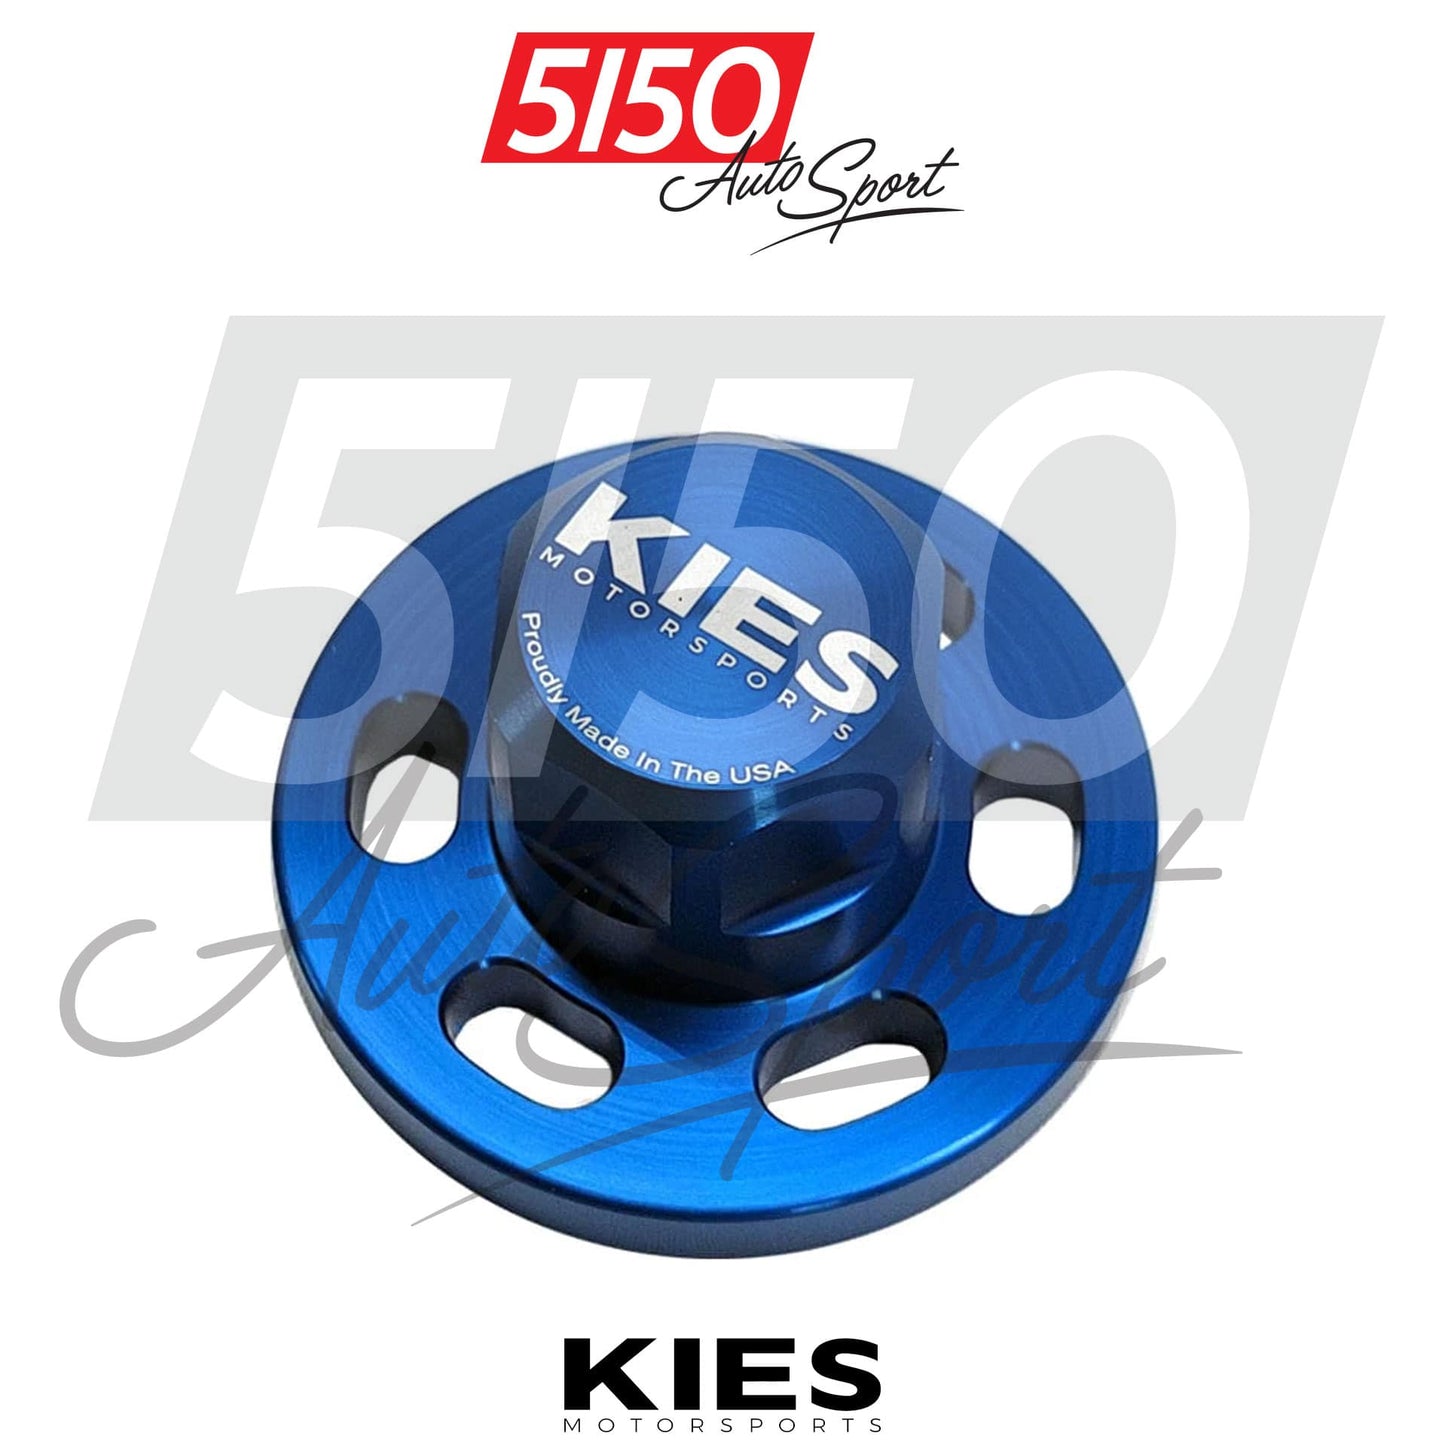 Kies Motorsports Crank Bolt Lock, BMW N54/N55/S55